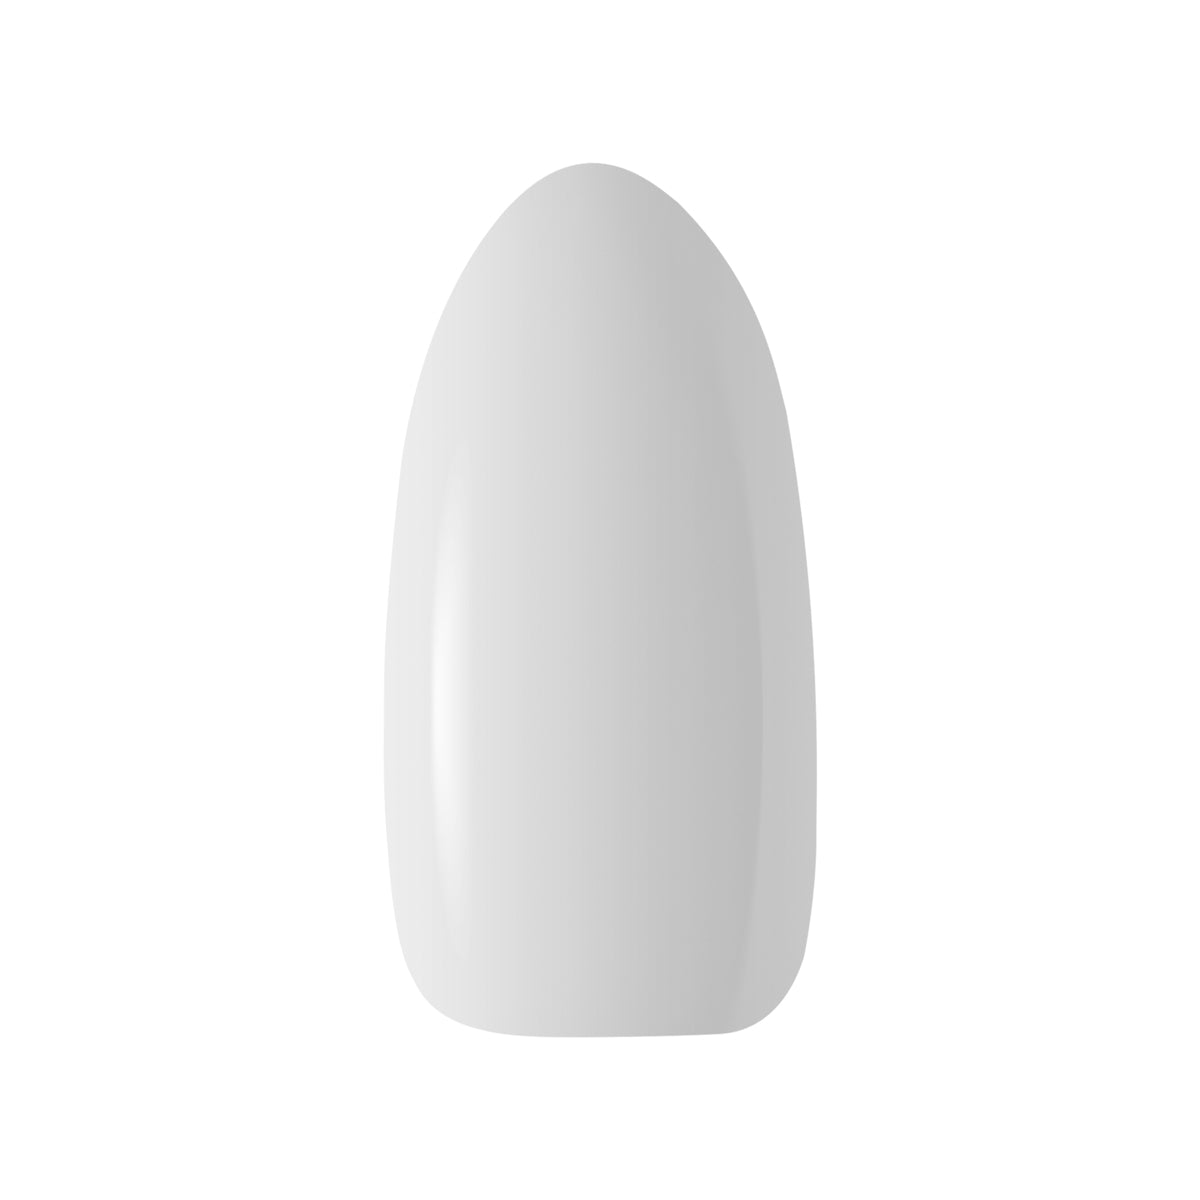 OCHO NAILS Hybrid nail polish gray 601 -5 g